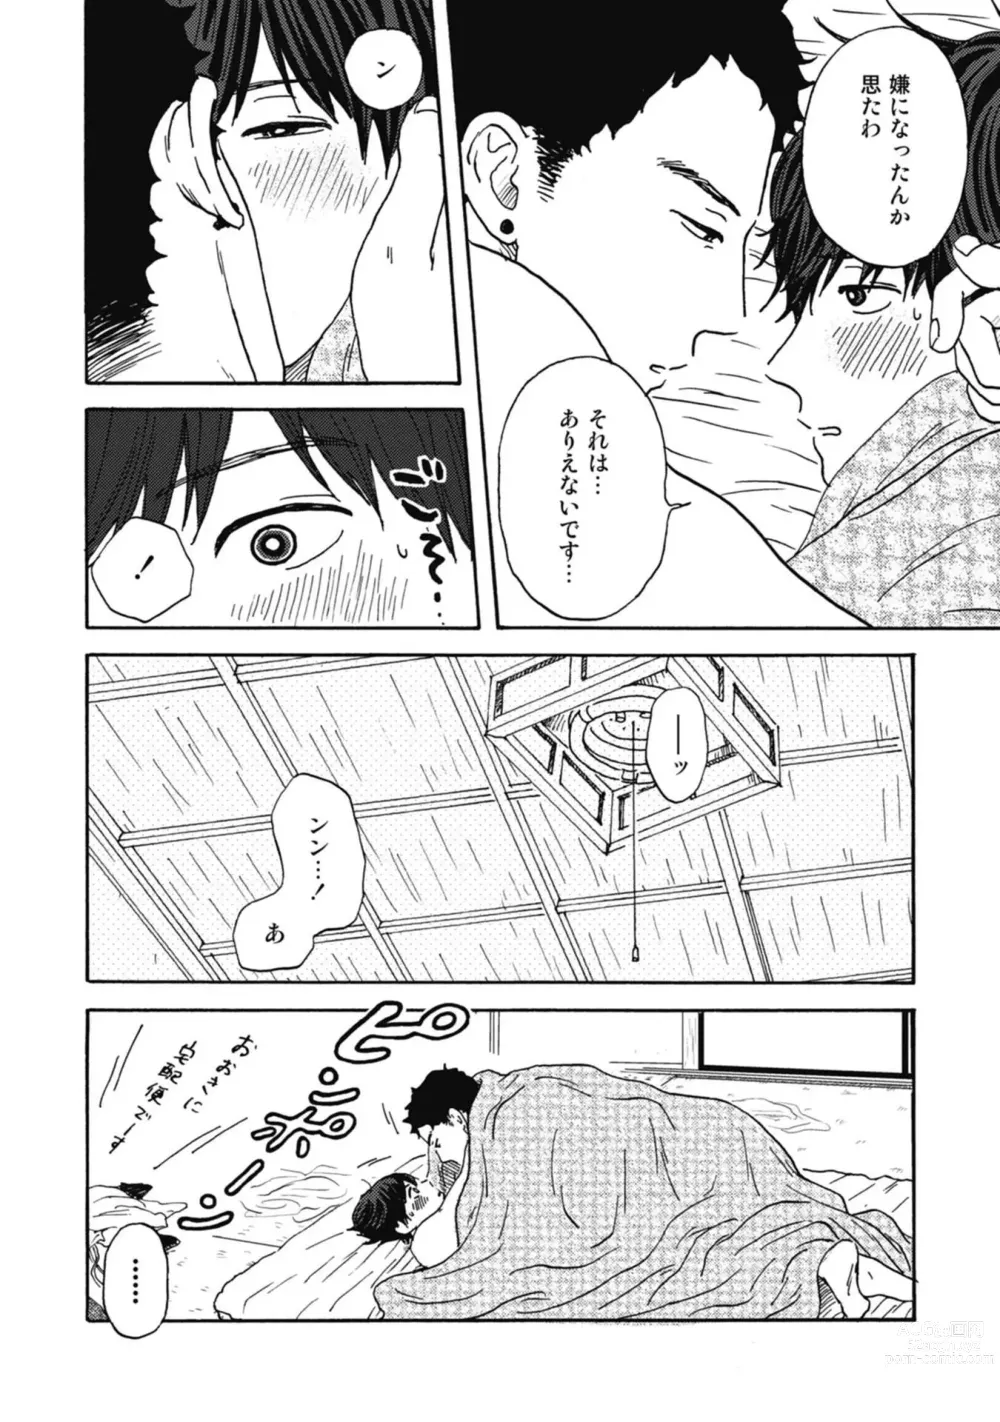 Page 204 of manga Ushimitsu Dokidoki Kosyotentan